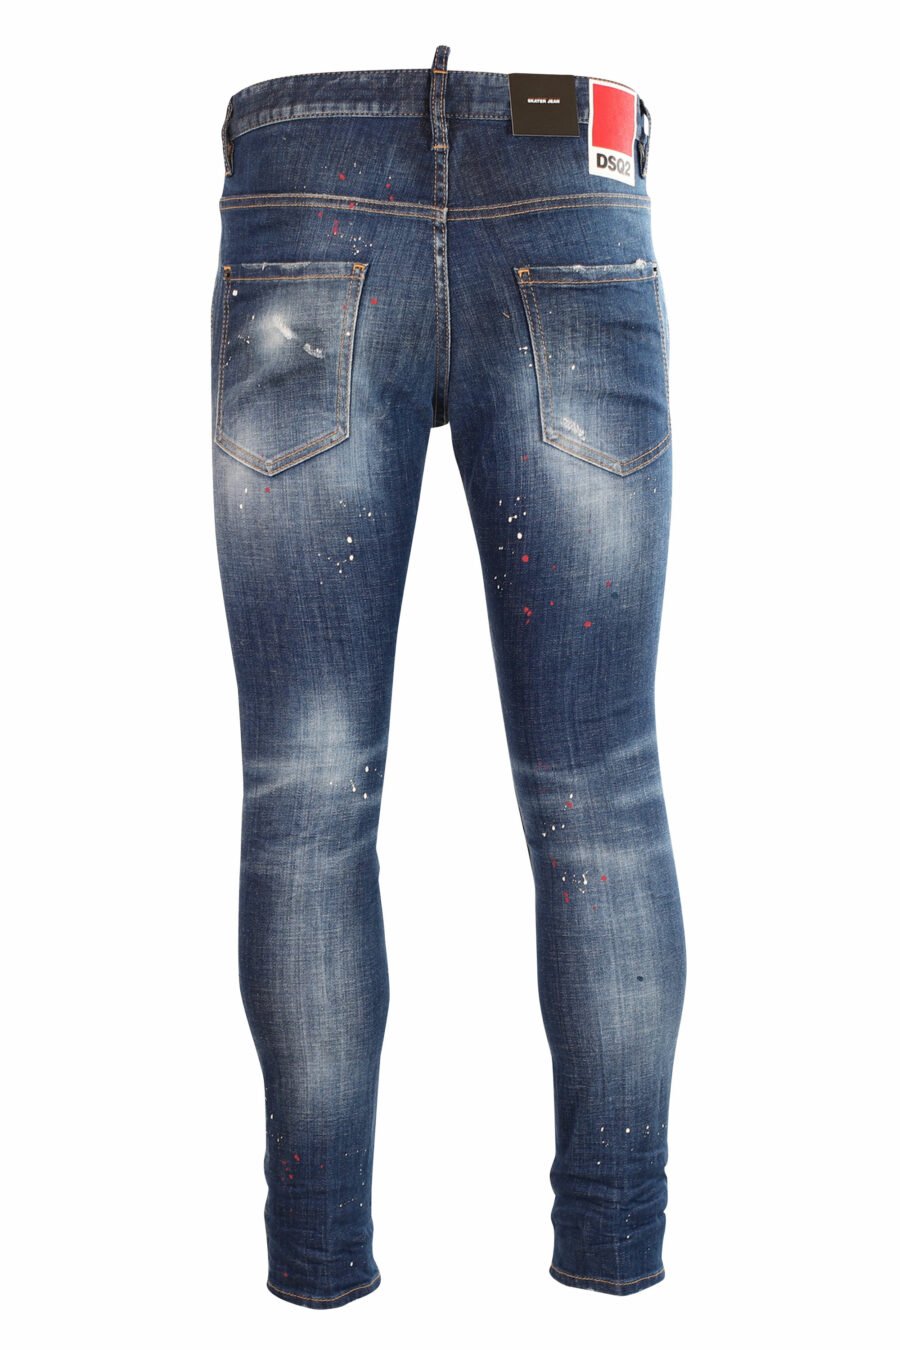 Pantalón vaquero "skater" azul semi desgastado con pintura y rotos - 8052134940020 3